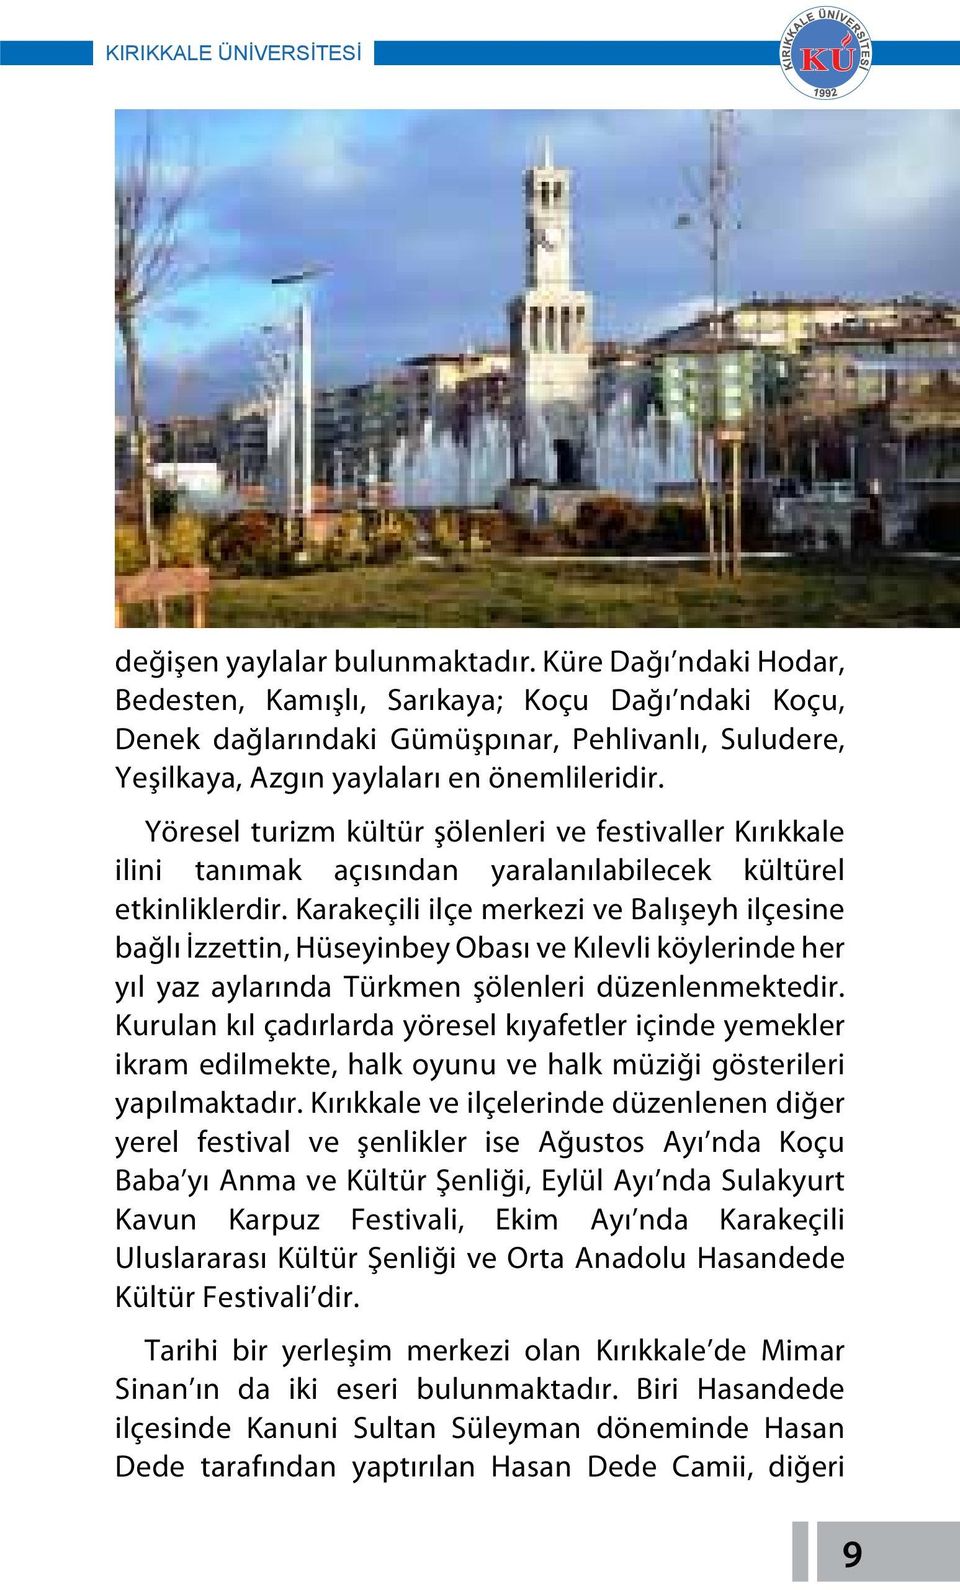 Yöresel turizm kültür şölenleri ve festivaller Kırıkkale ilini tanımak açısından yaralanılabilecek kültürel etkinliklerdir.